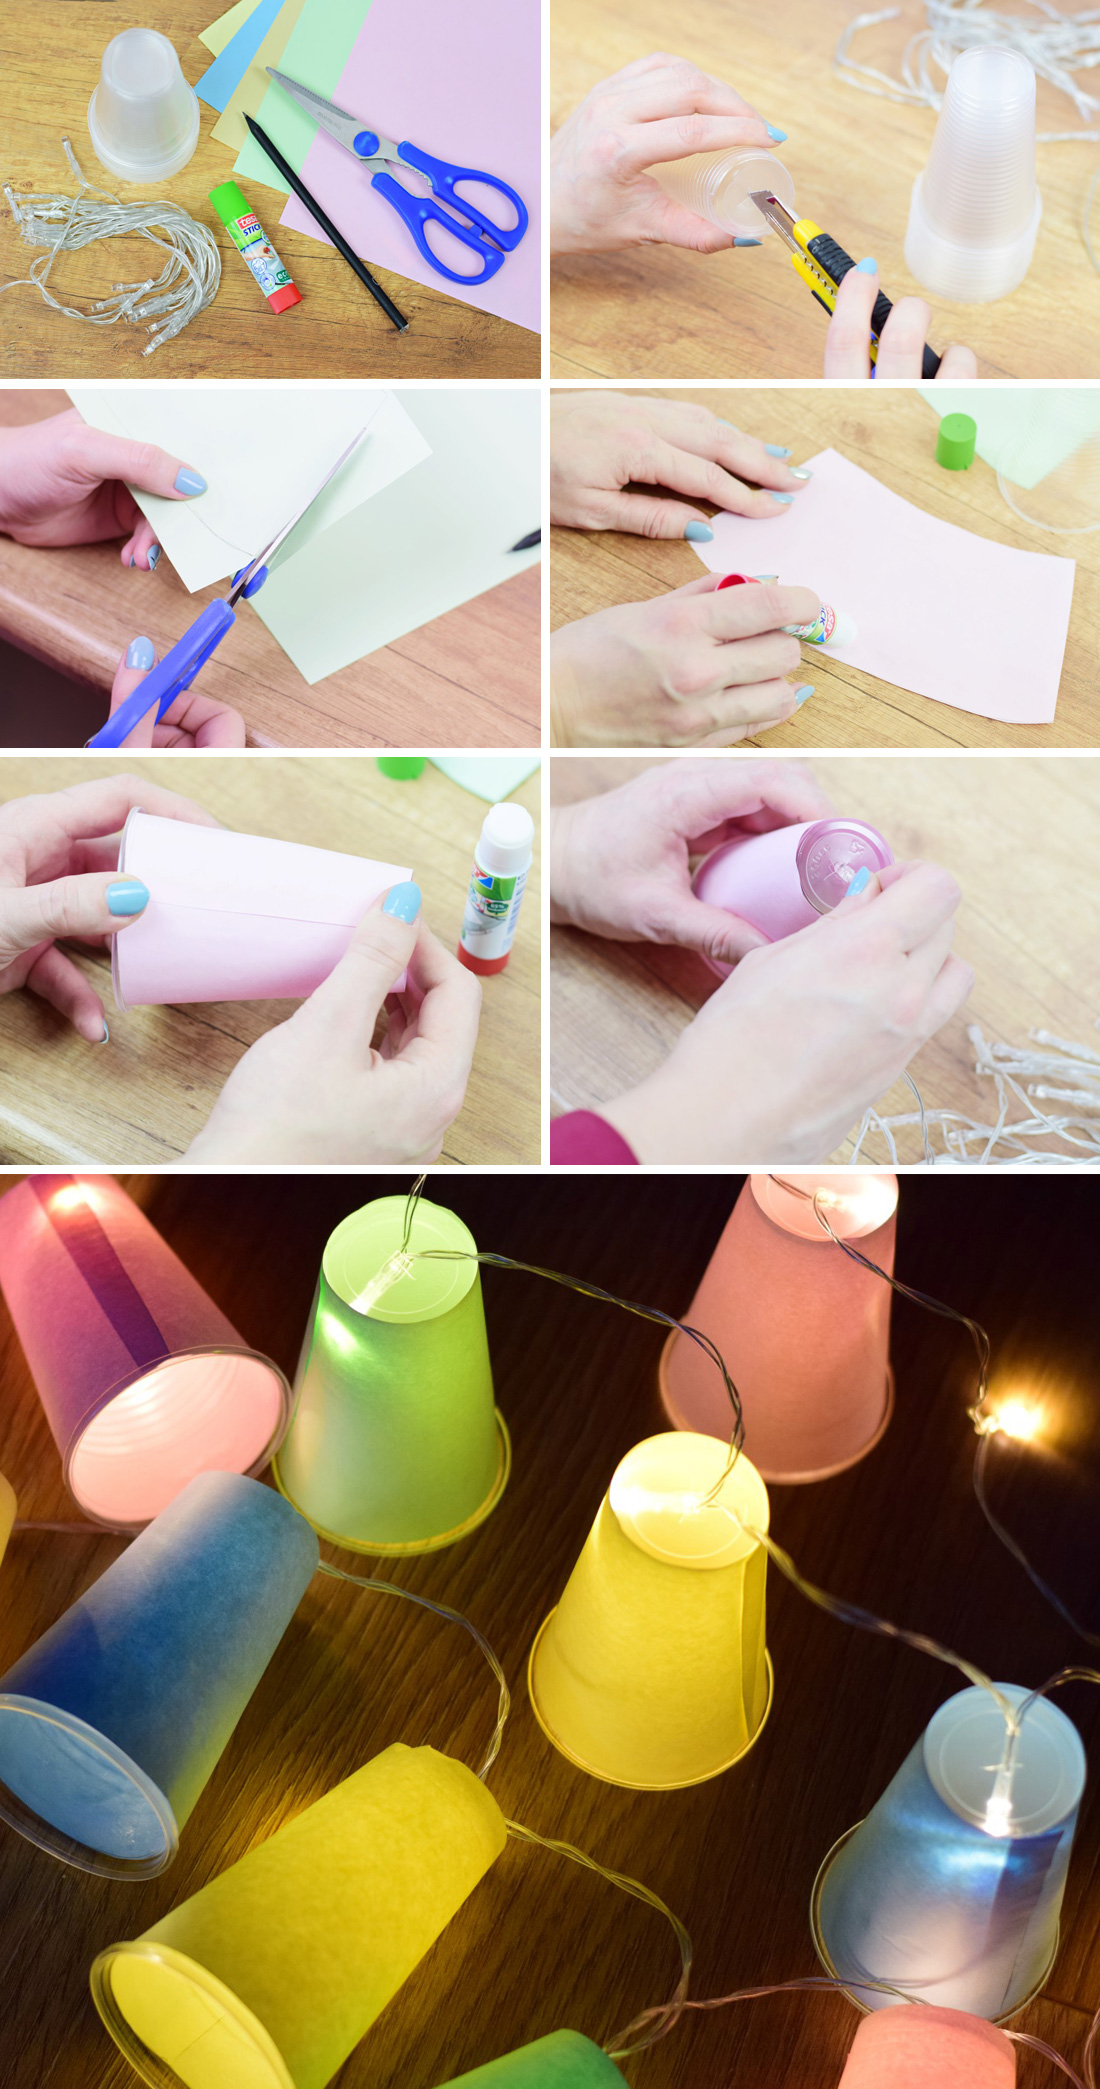 DIY instrucción guirnalda de luz de vasos desechables cadena de luz blog